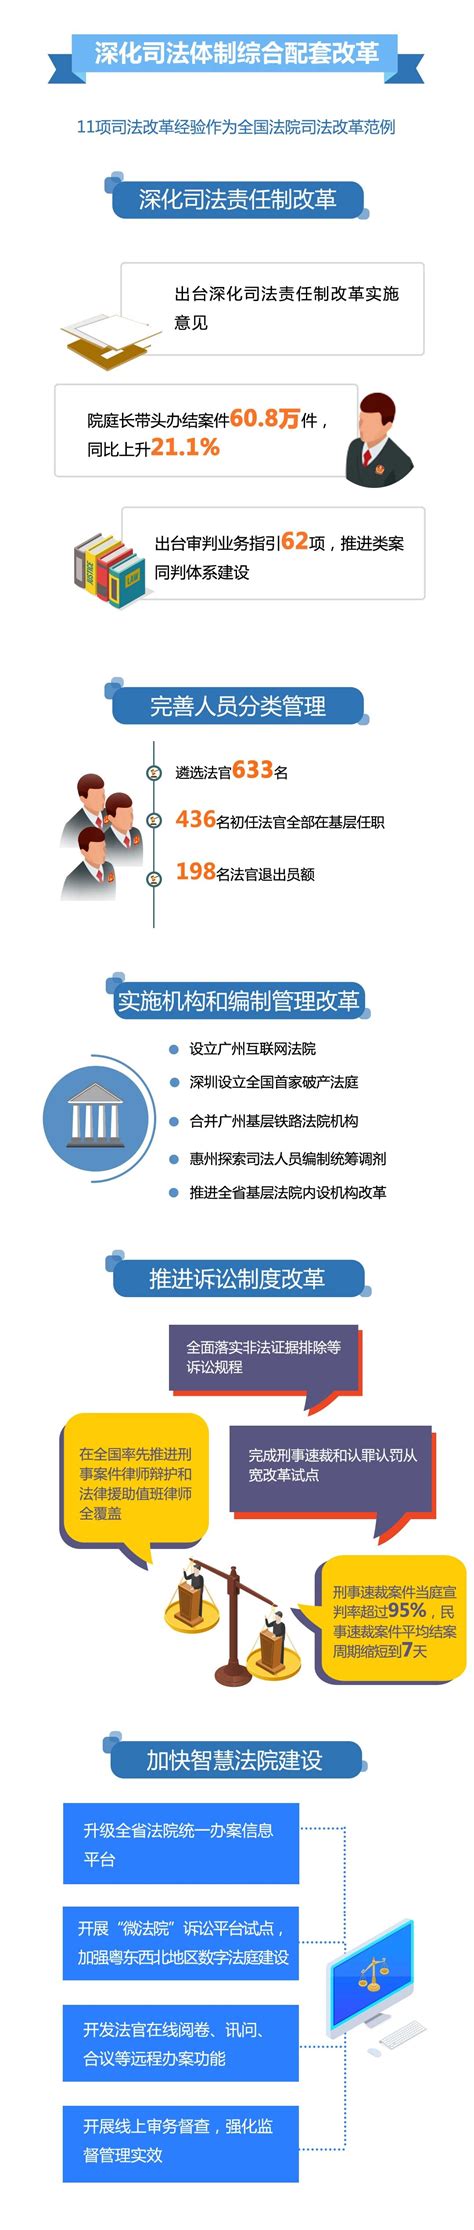 一图读懂广东省高级人民法院工作报告_肇庆市中级人民法院